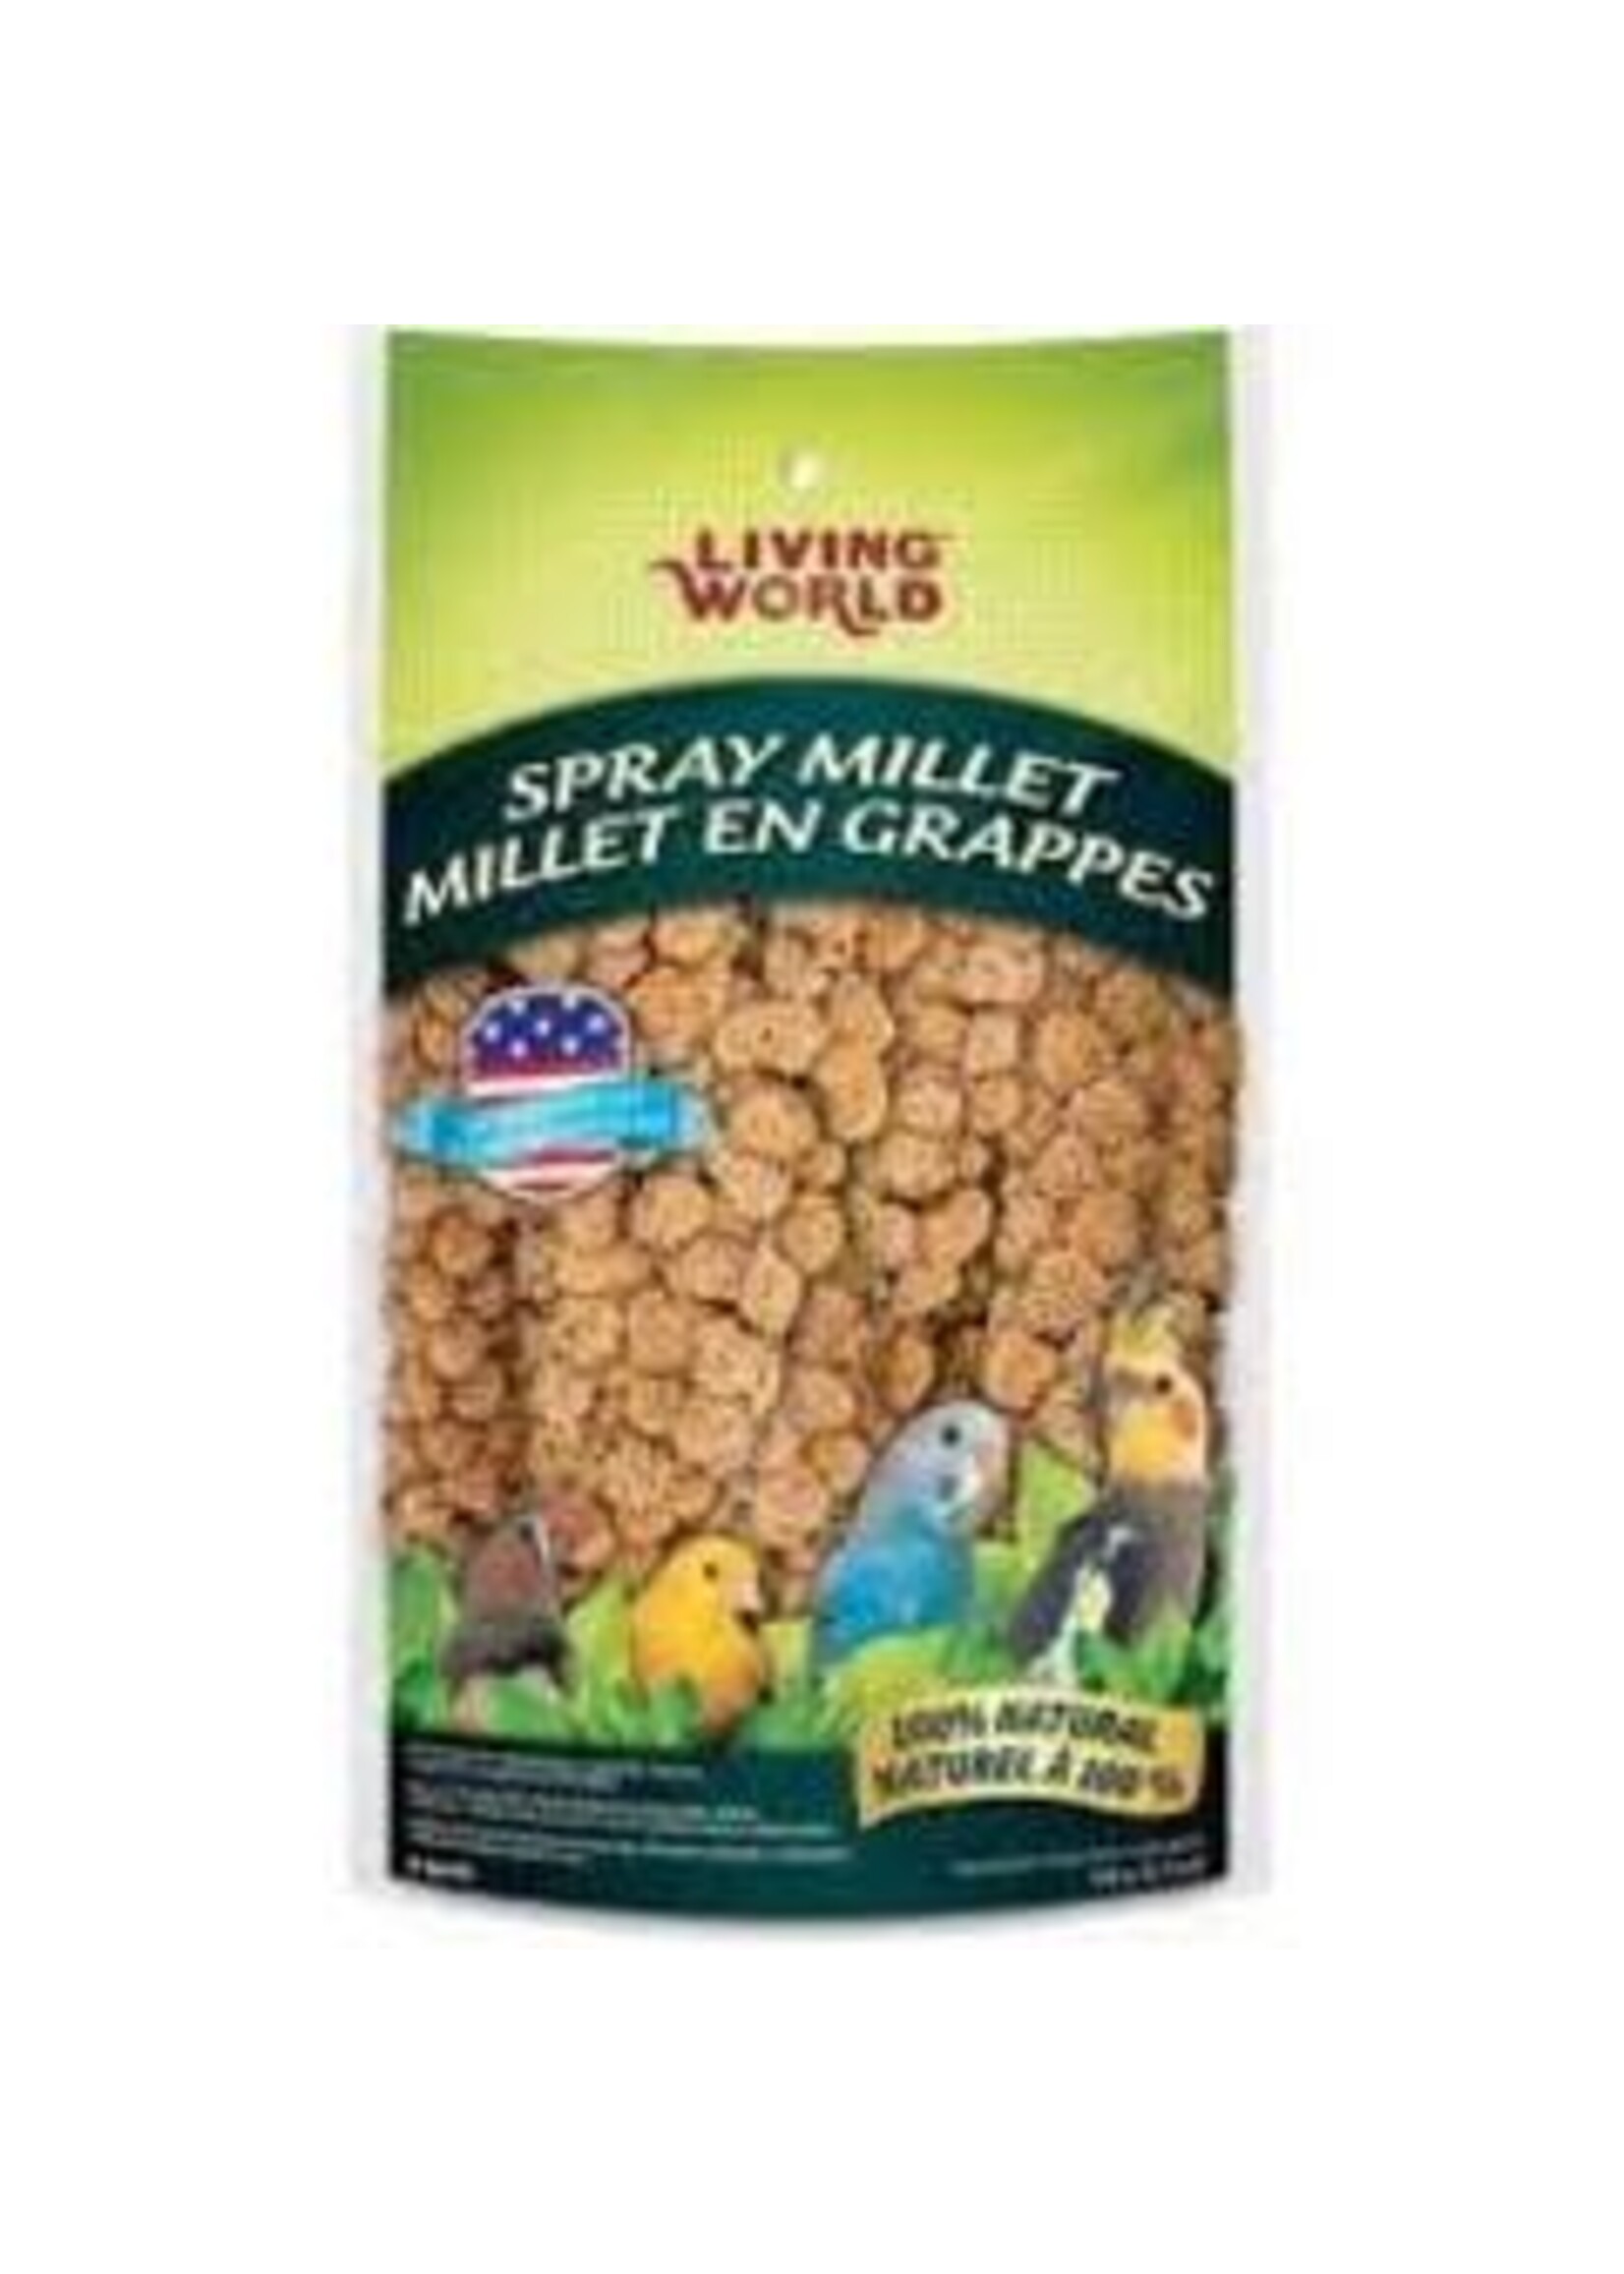 Living World Living World - Spray Millet 200g